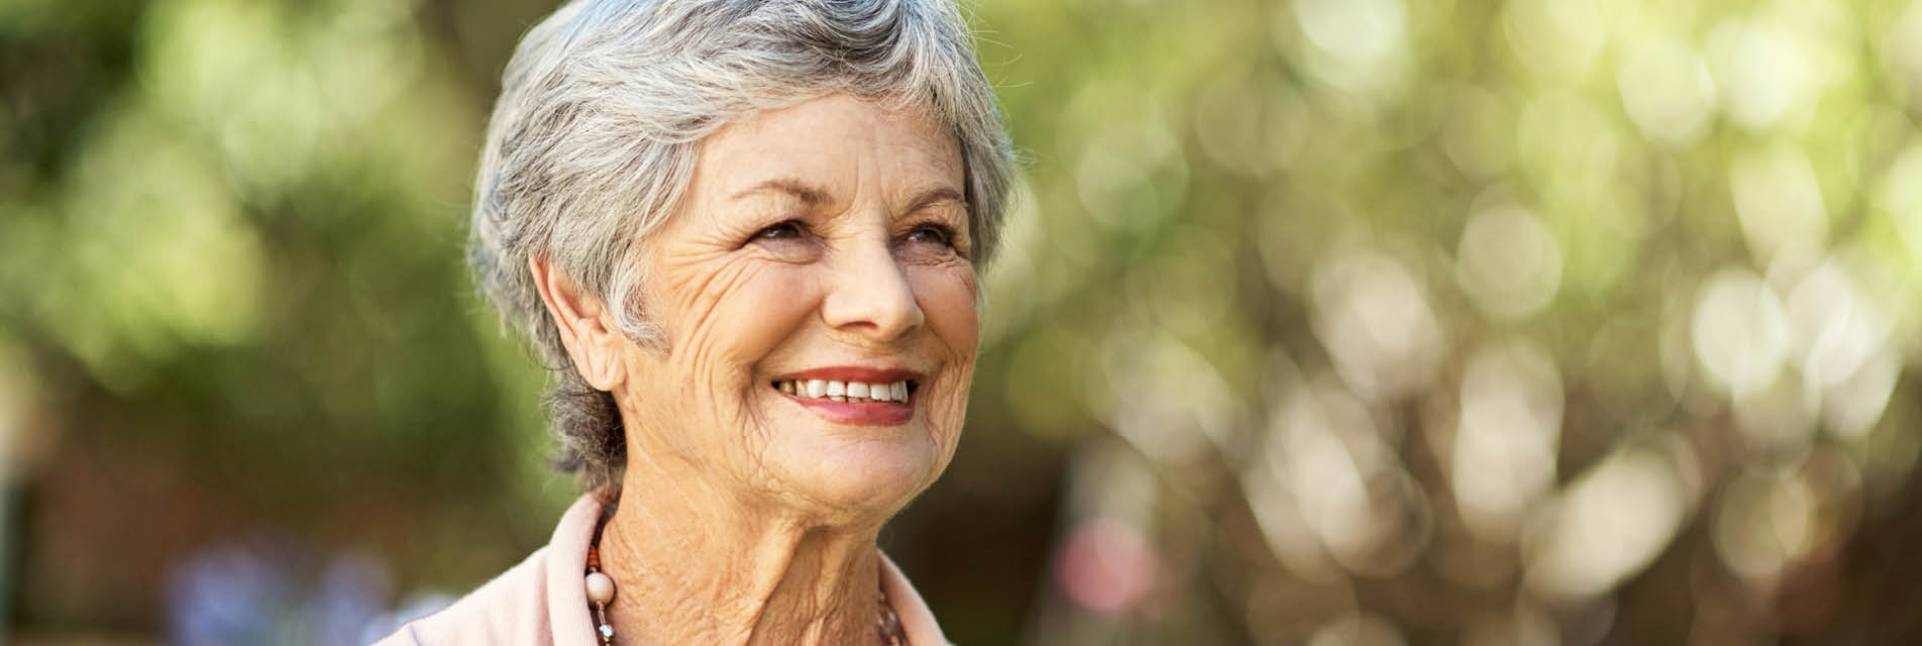 Cuidados de la piel en las personas mayores